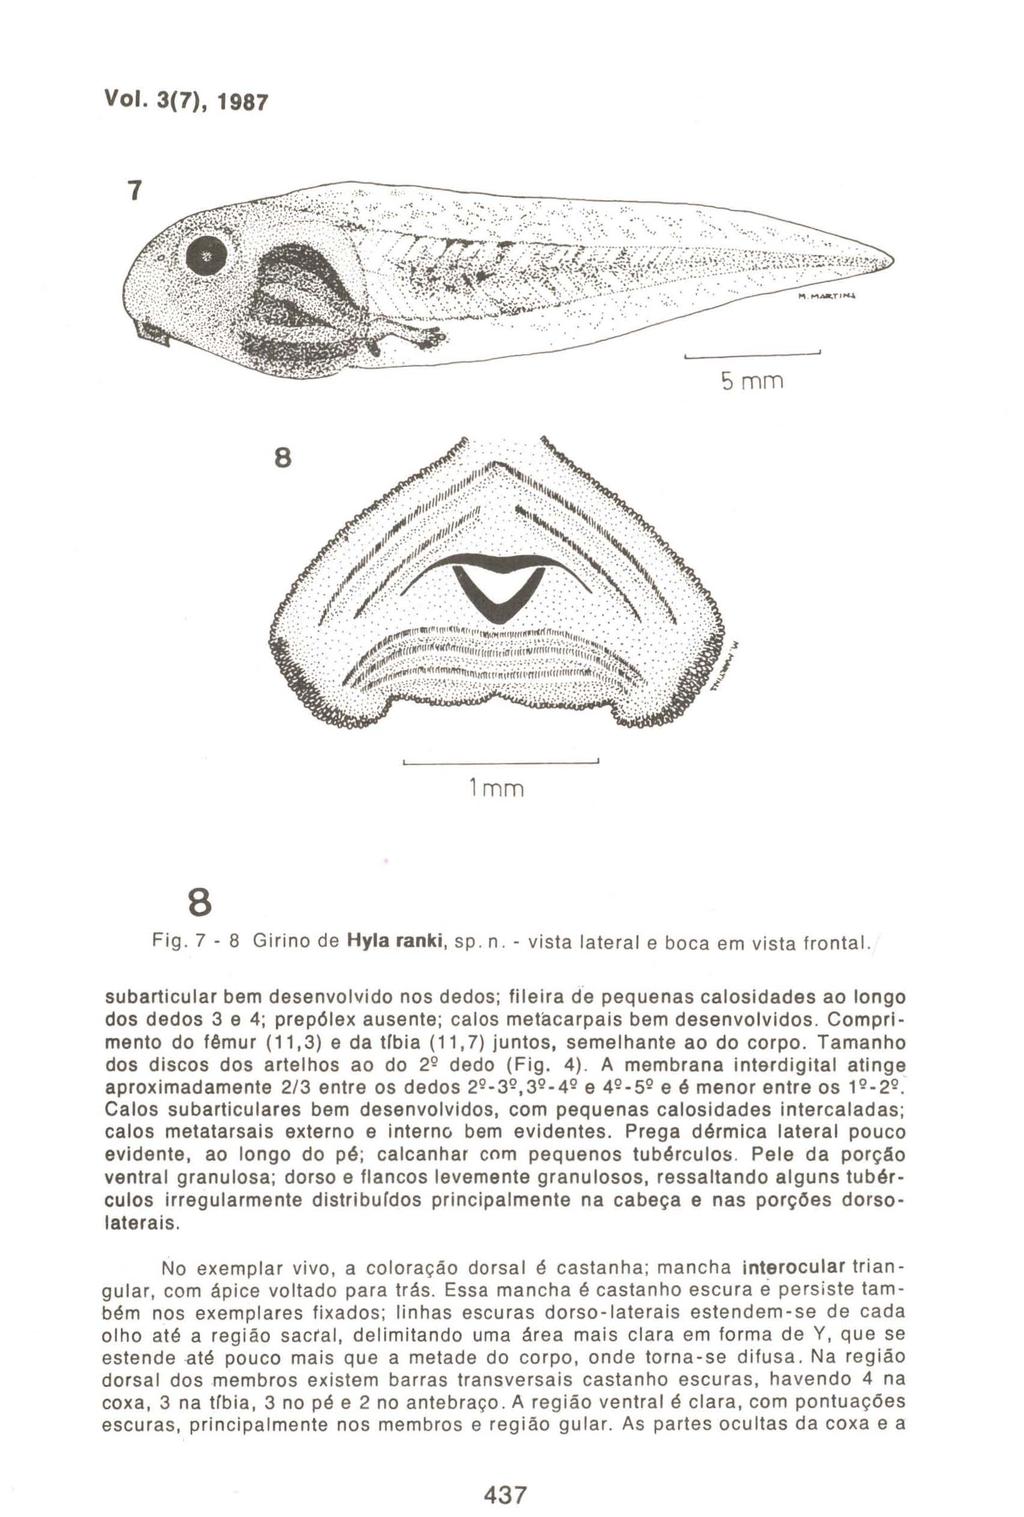 Vol. 3(7), 1987 lmm 8 Fig. 7-8 Girino de Hyla ranki, sp. n. - vista lateral e boca em vista frontal.